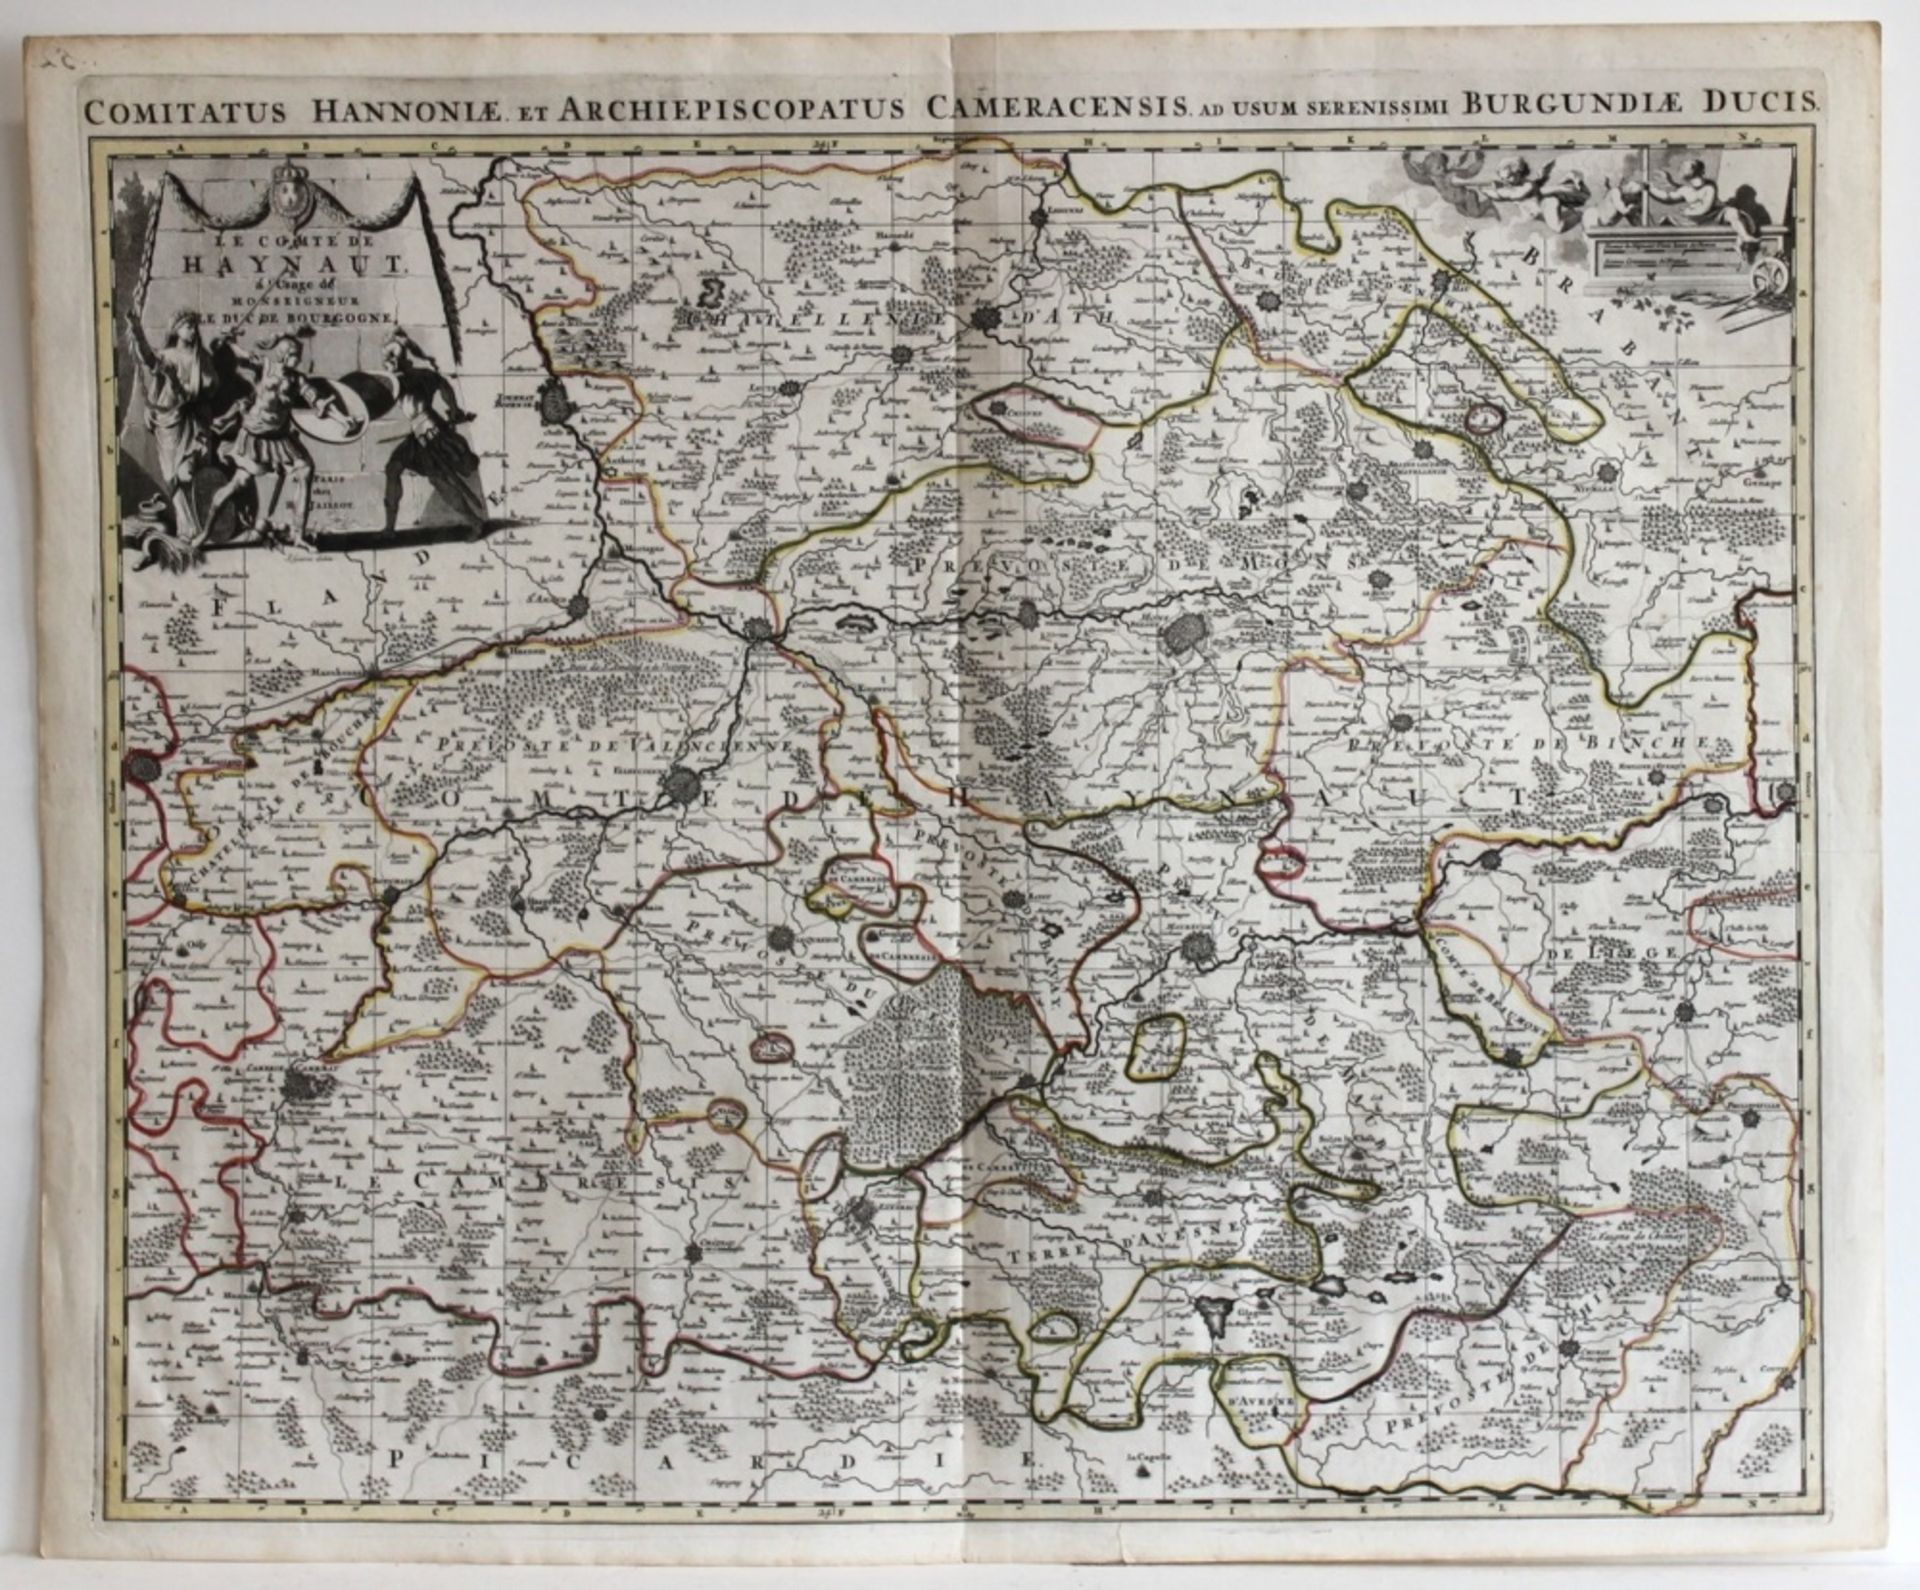 Belgien. Hennegau. Altgrenzkolorierte Kupferstichkarte von H. Jaillot, ca. 1689. Bildgröße 60 x 48,5